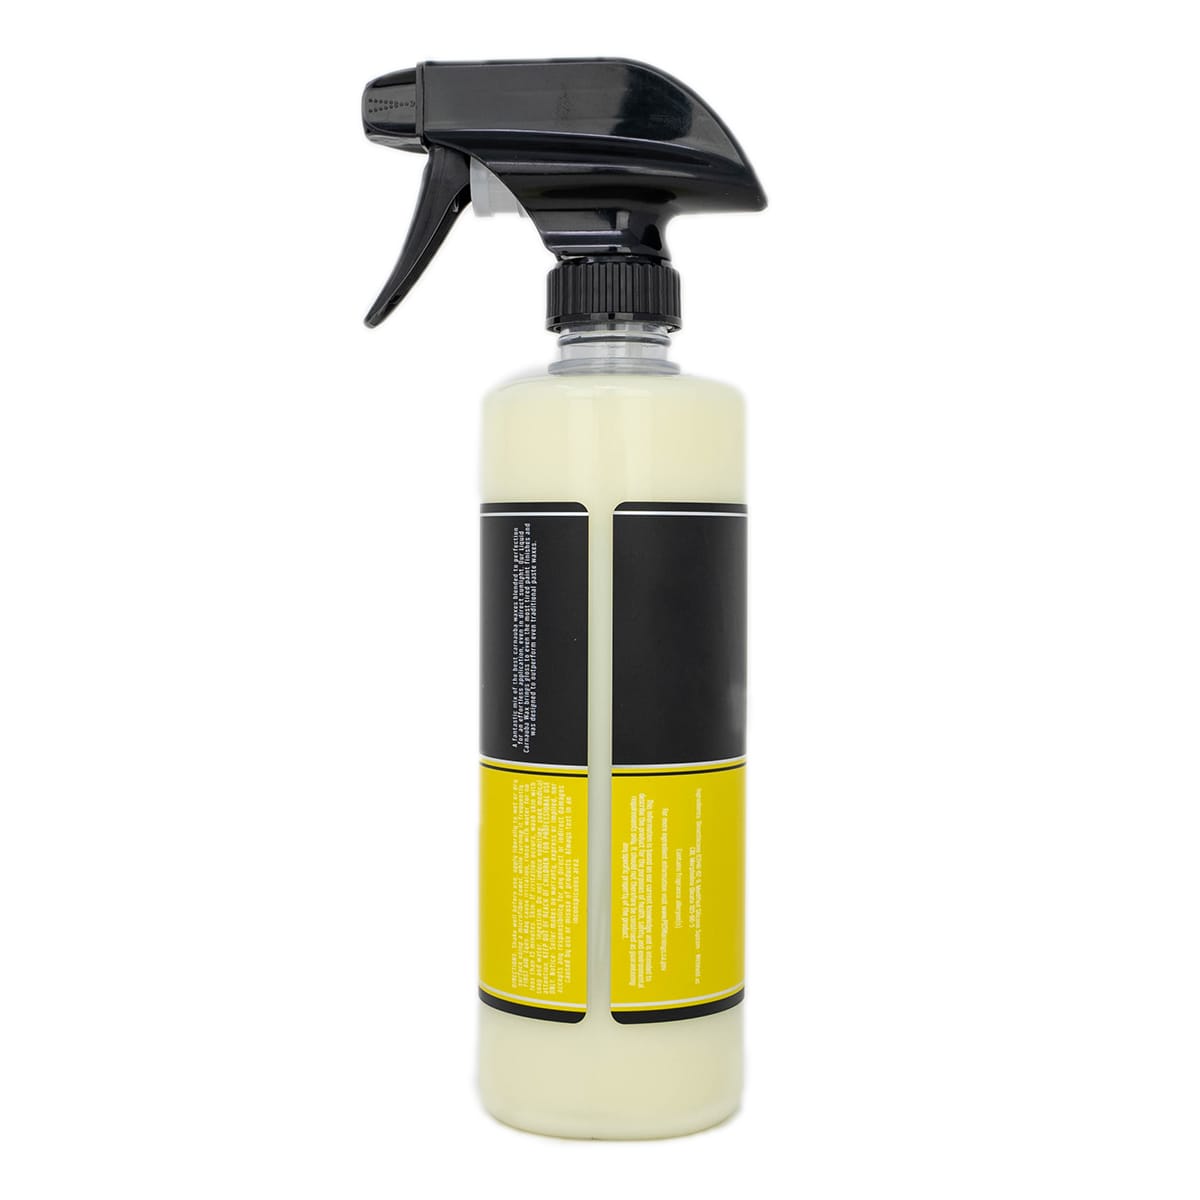 SoCal Wax Shop Ceramic Spray Sealant - car spray wax uv protection - car  spray ceramic wax - car spray wax - ceramic sio2 infused wax